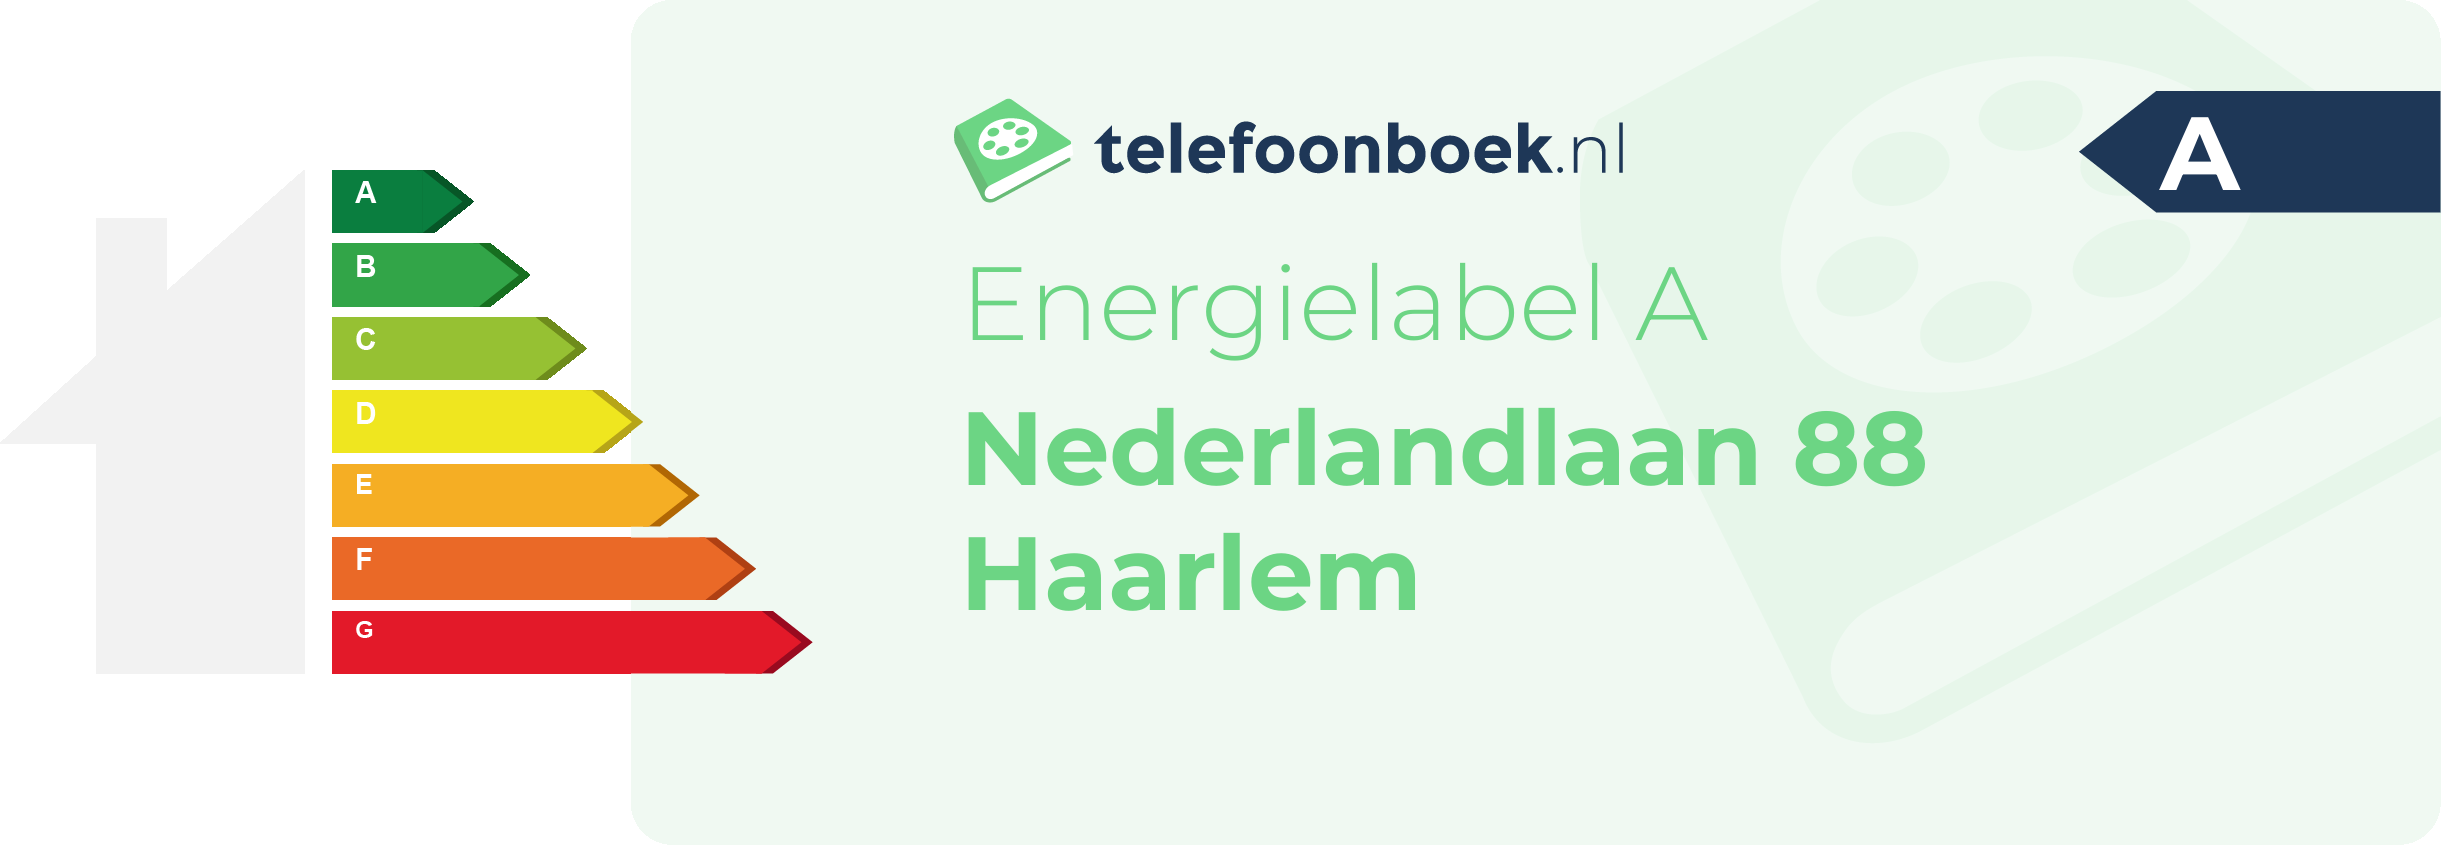 Energielabel Nederlandlaan 88 Haarlem